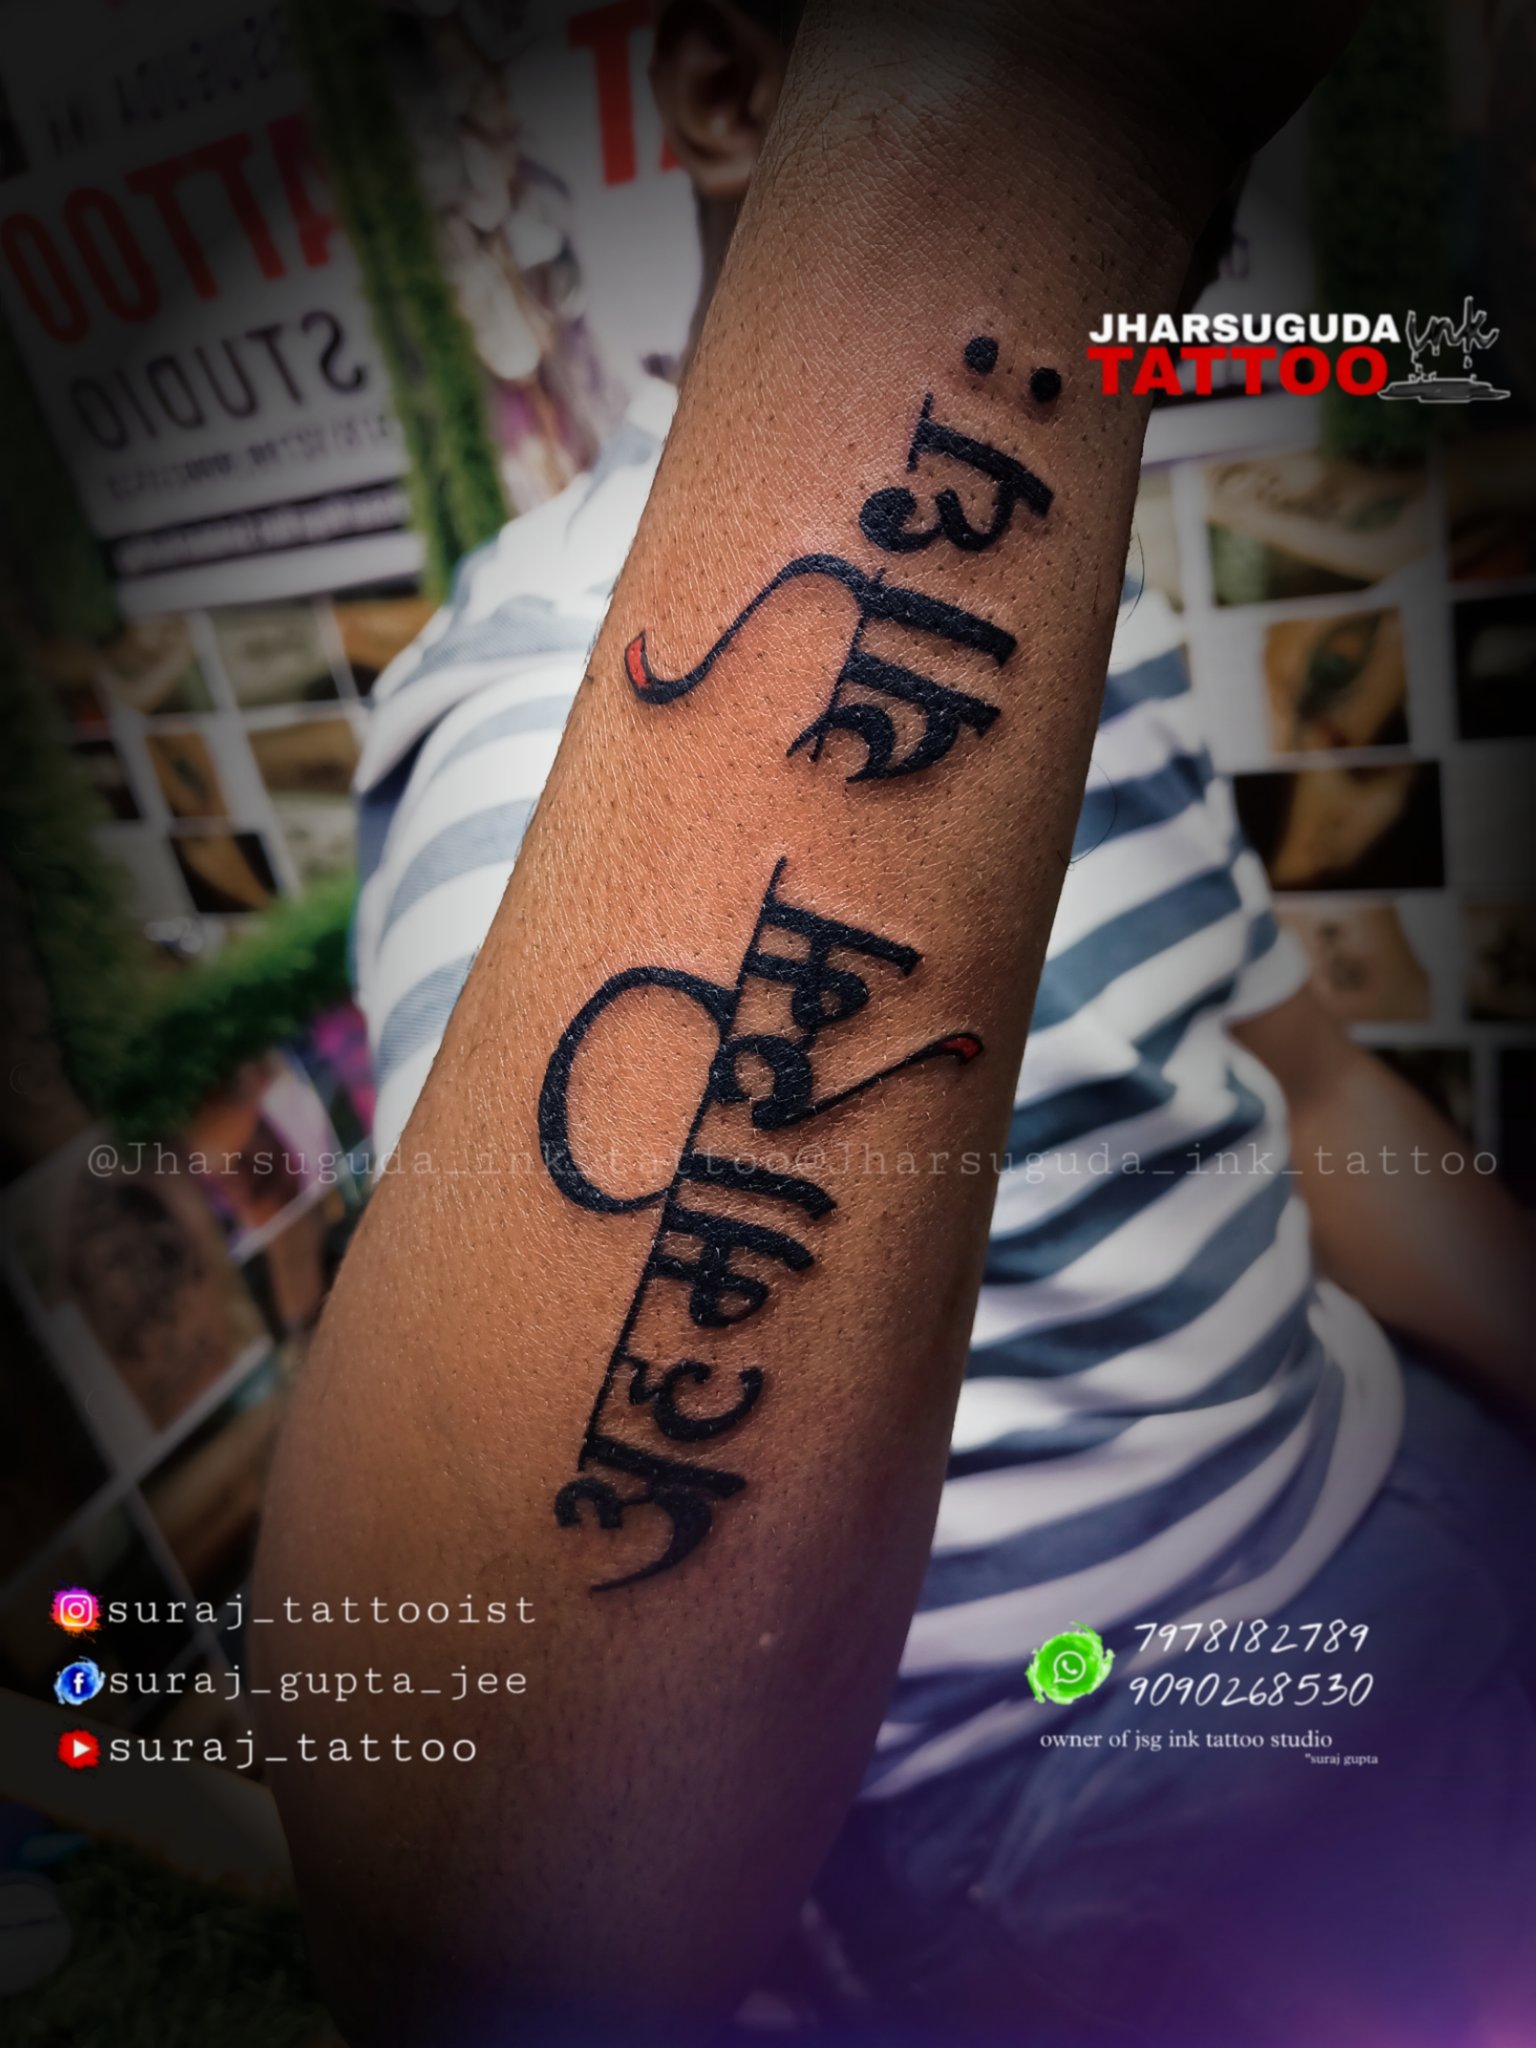 Vishal Manhas - Owner/Tattoo Artist - Youngistaan Tattooz | LinkedIn